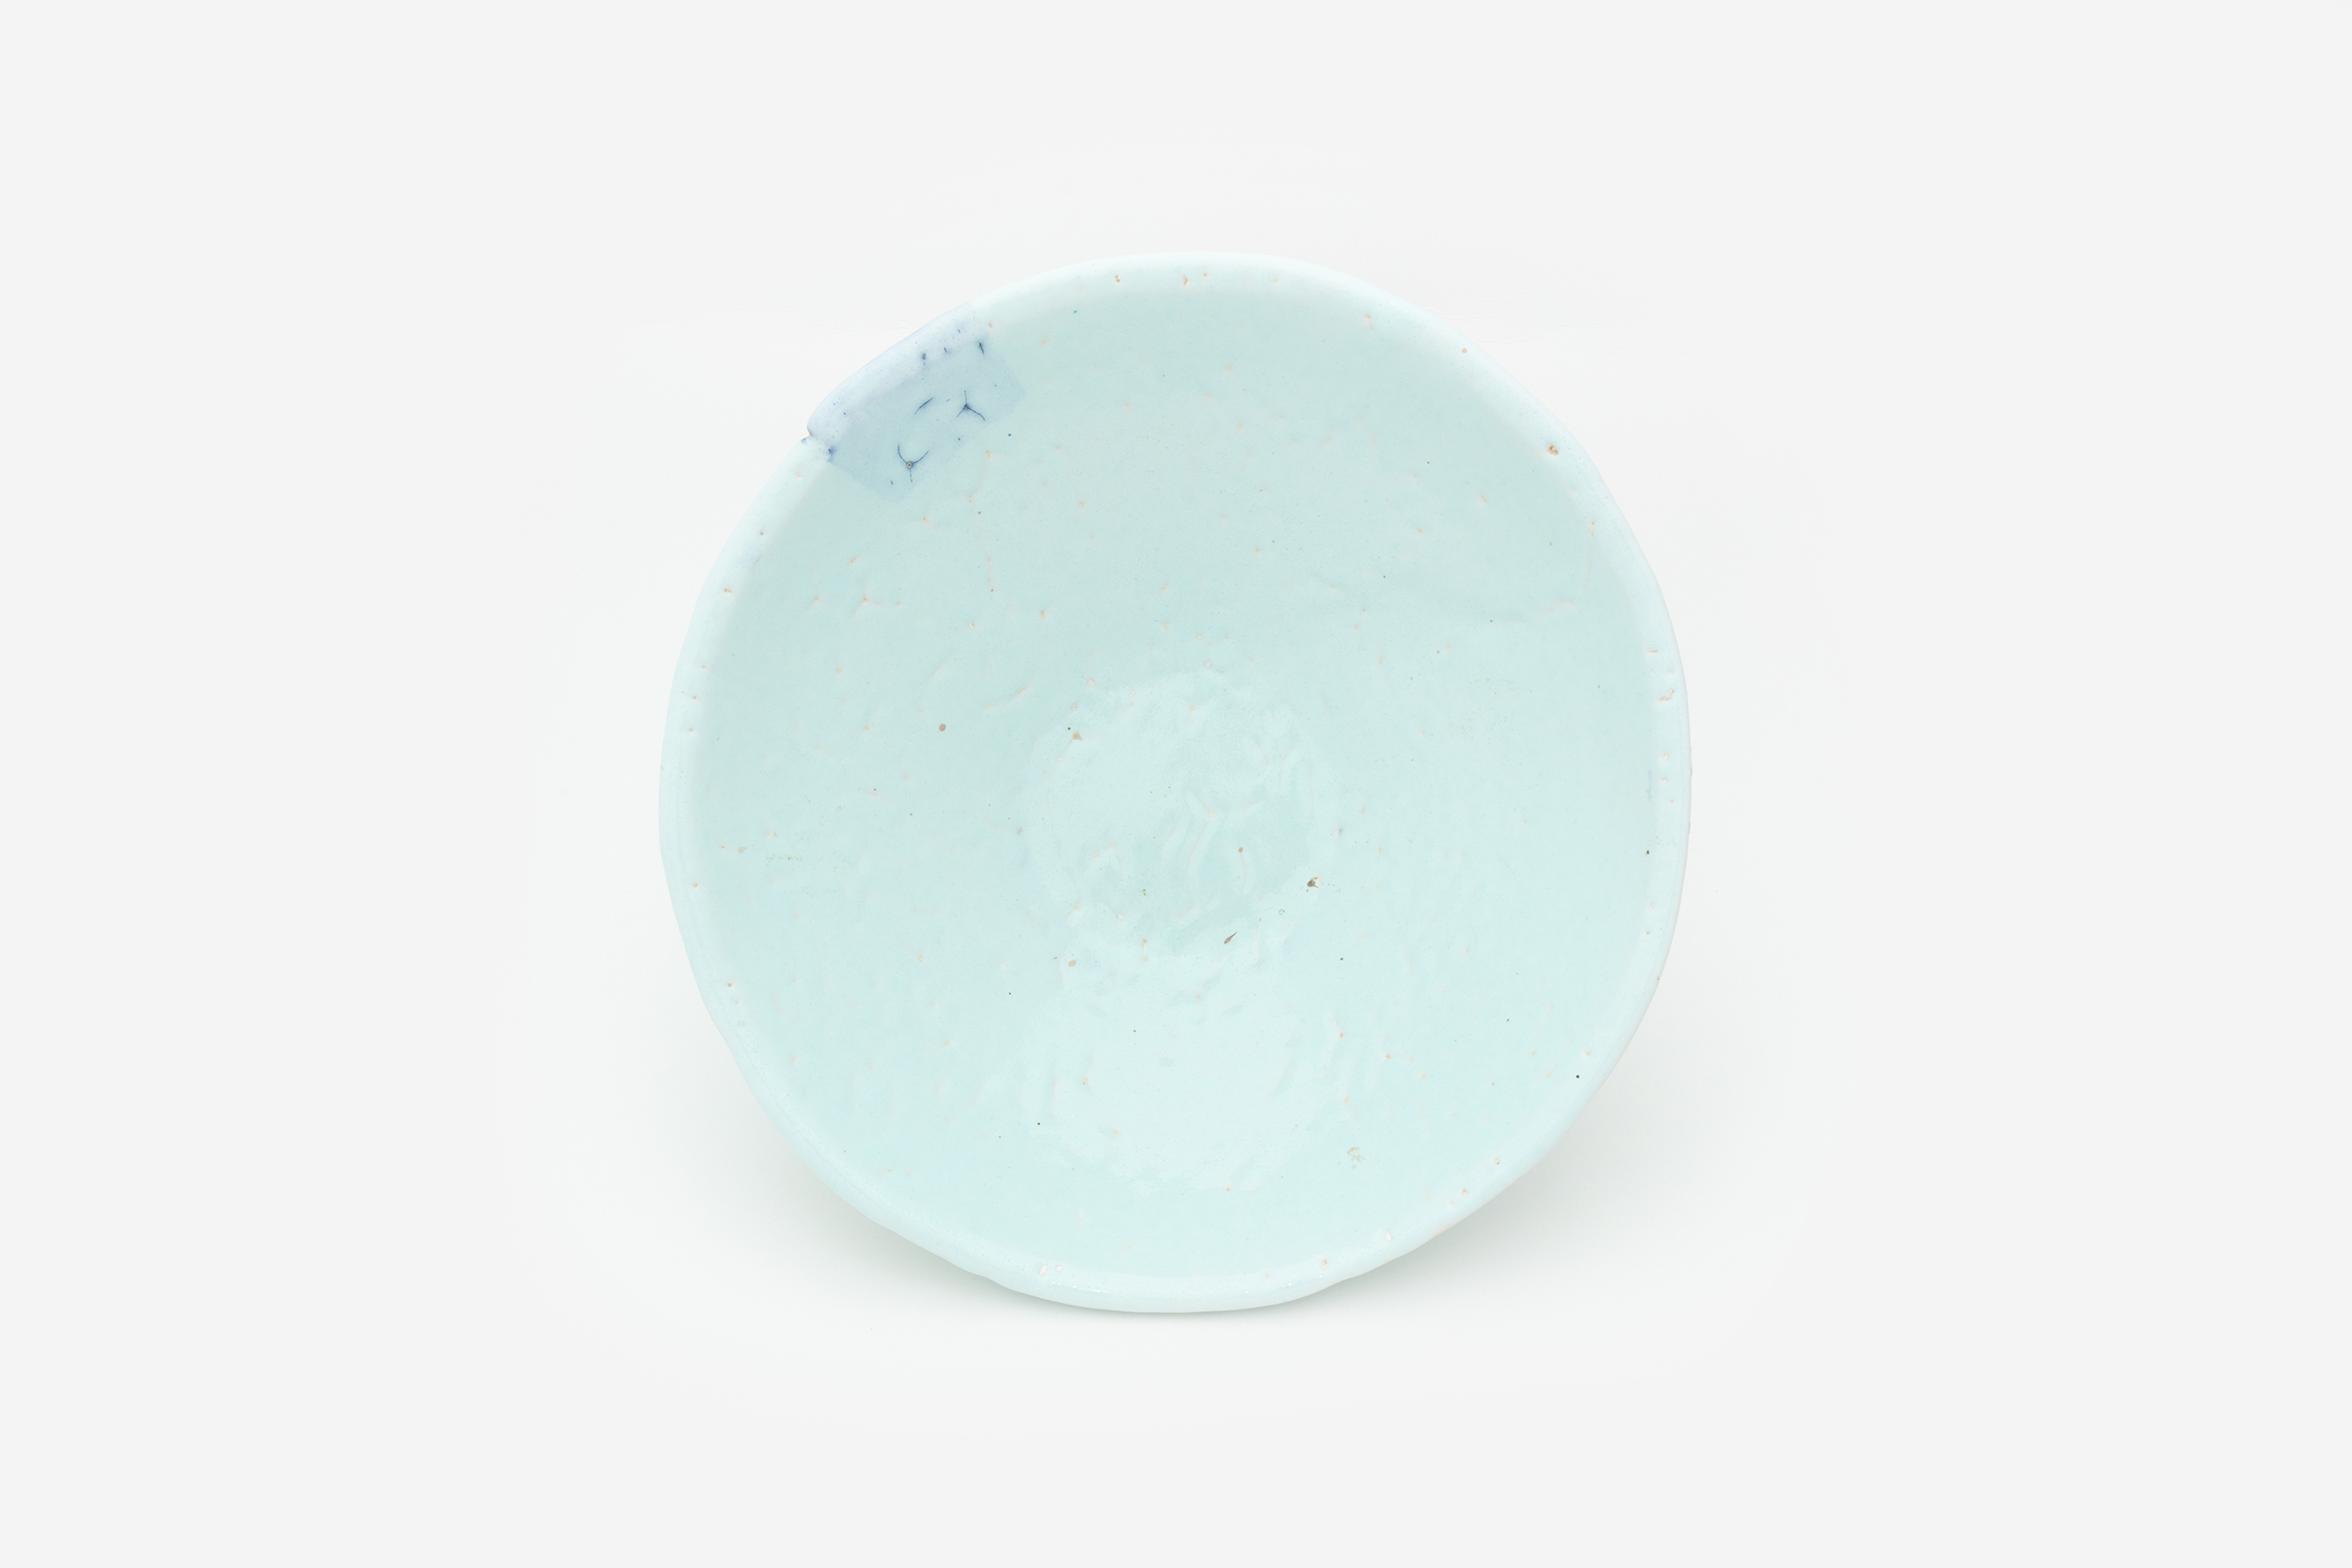 Hylton Nel - Turquoise bowl, 17 January 2011